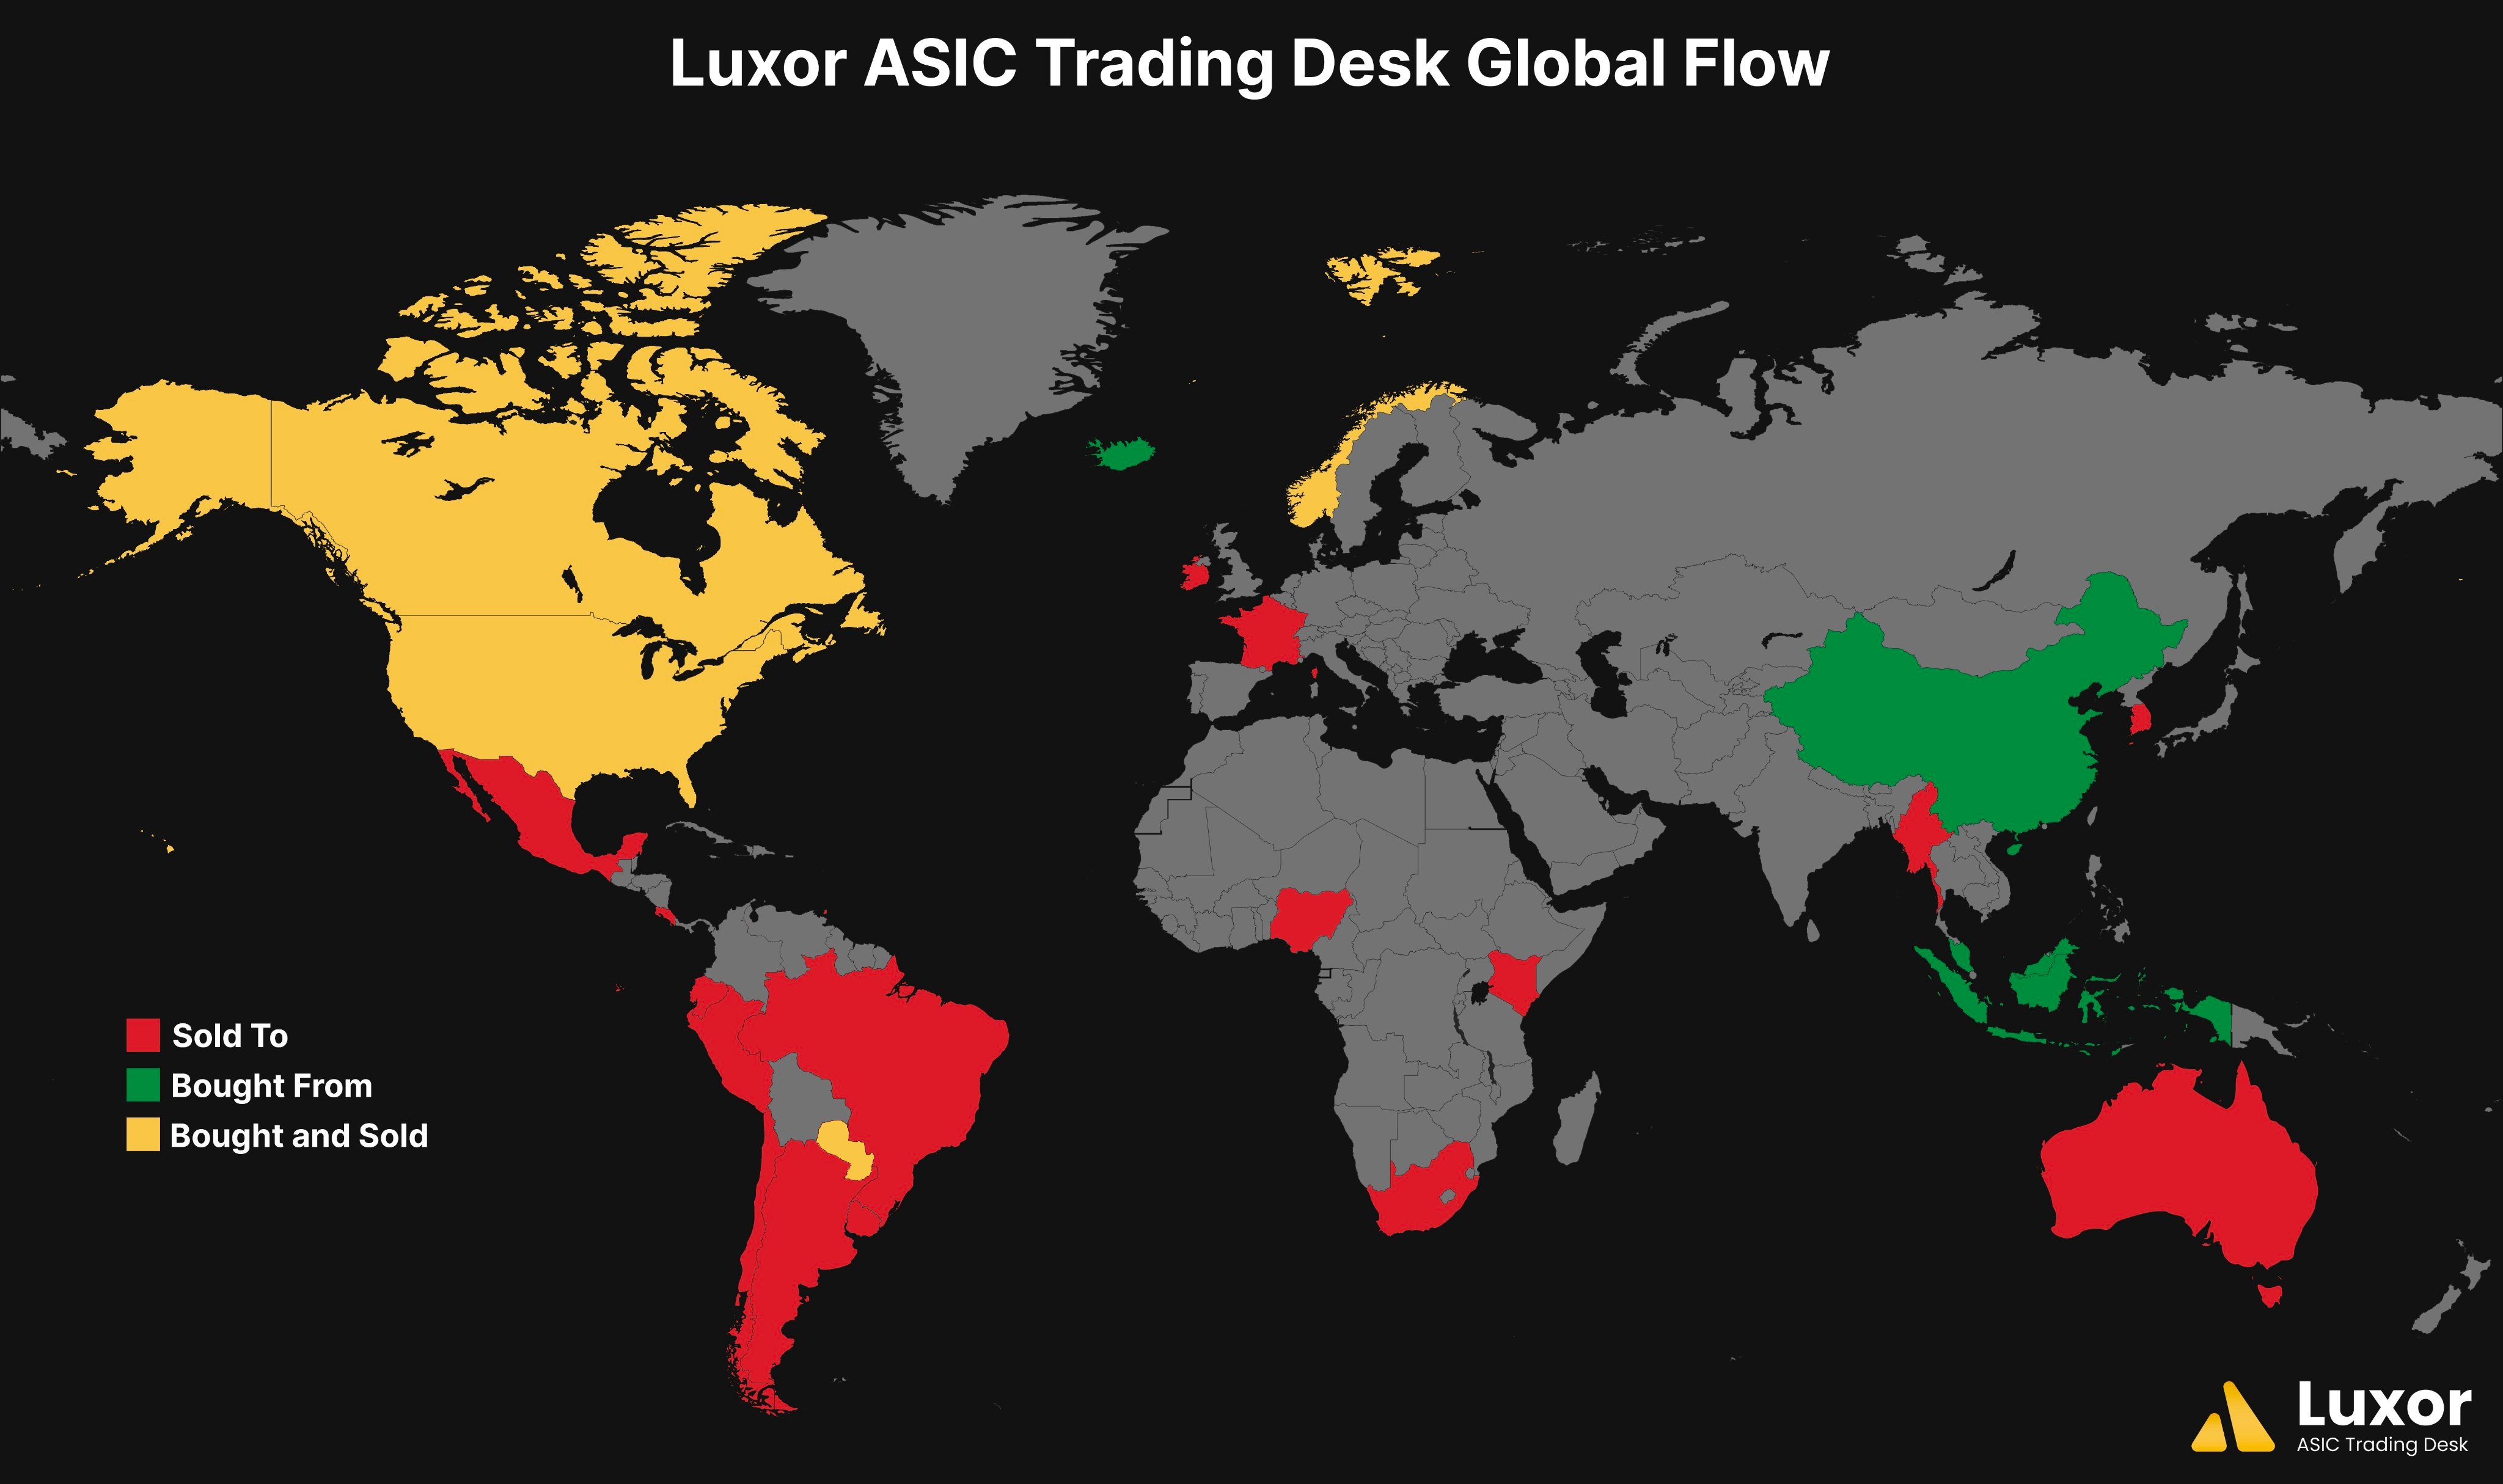 Luxor ASIC Trading Desk Global Flow